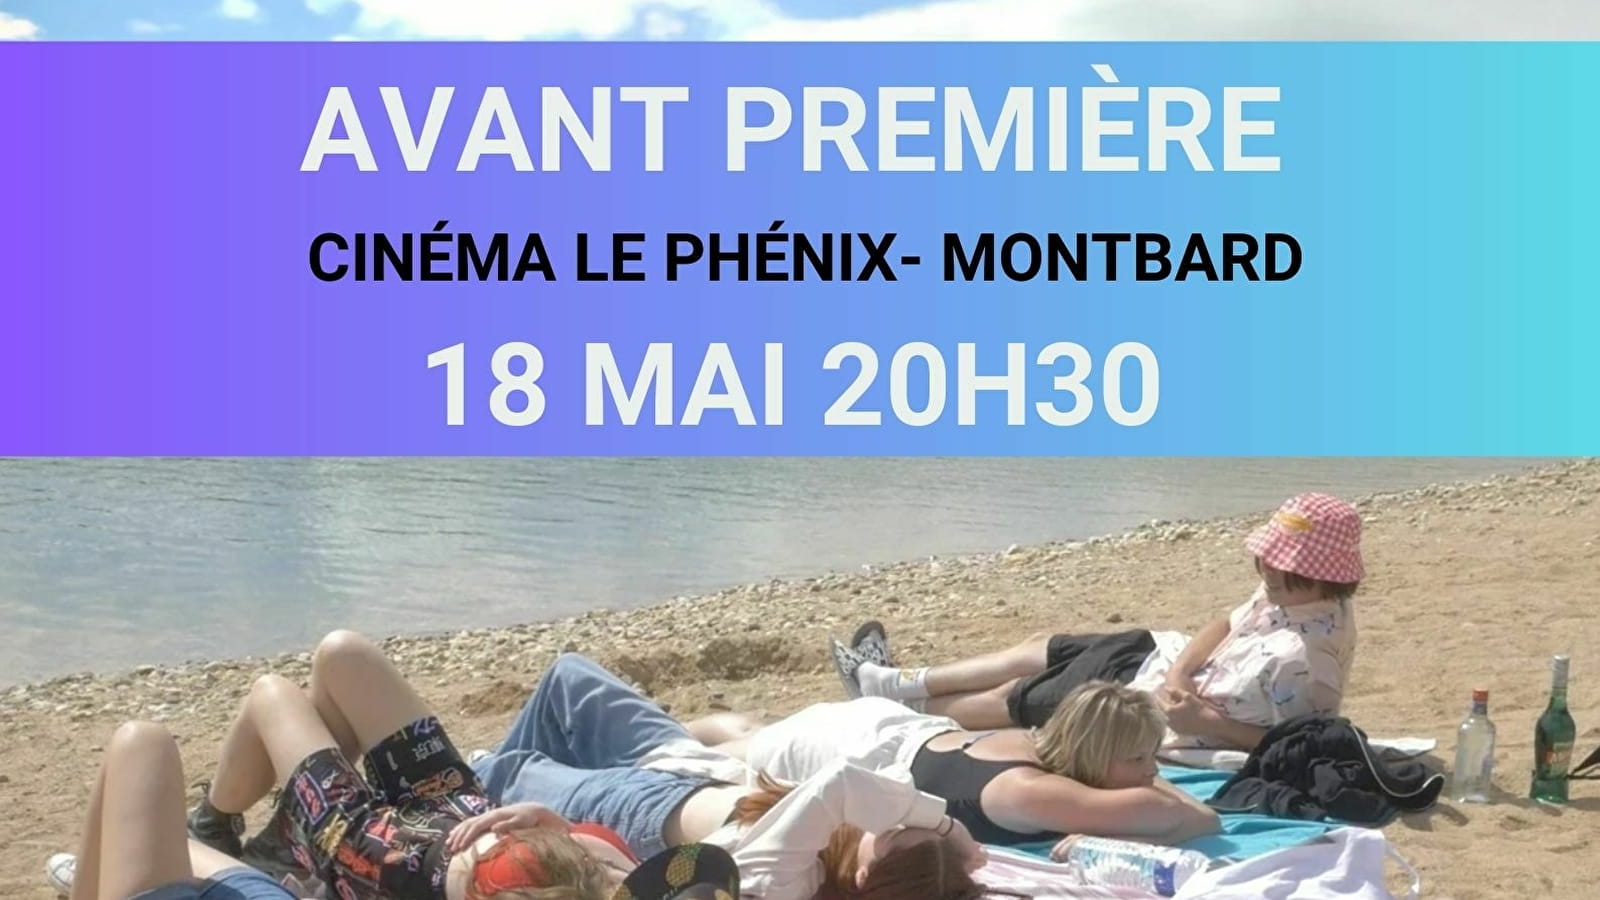 Ciné-club au cinéma Le Phénix-Montbard - Avant-première